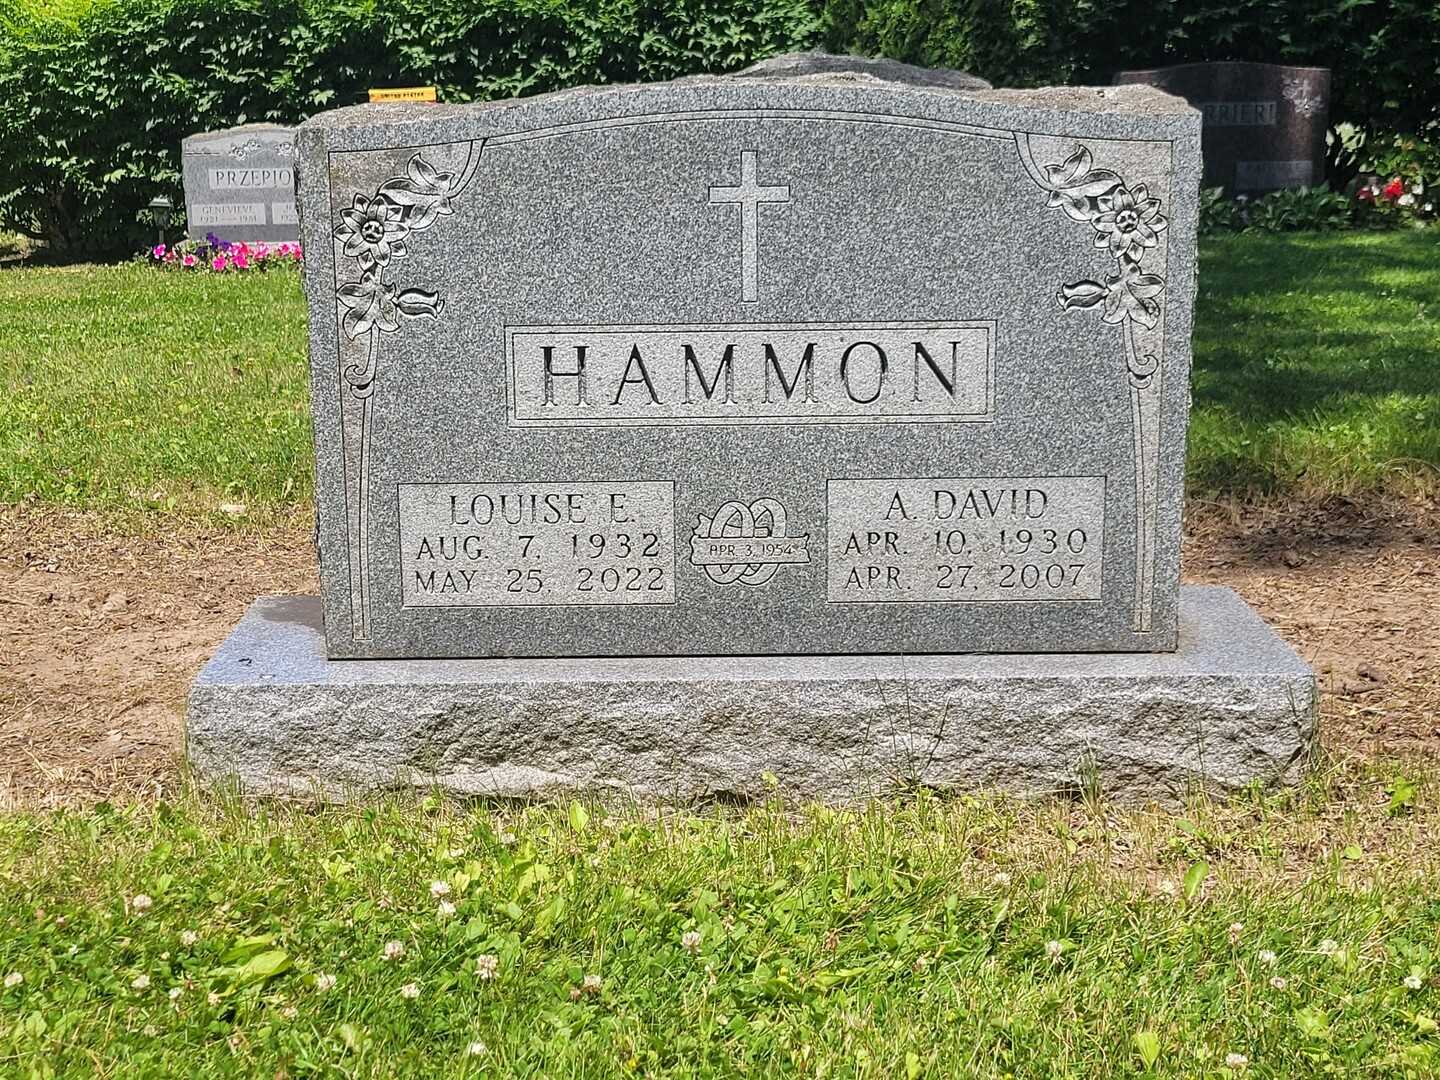 Louise Ann E. Hammon's grave. Photo 2